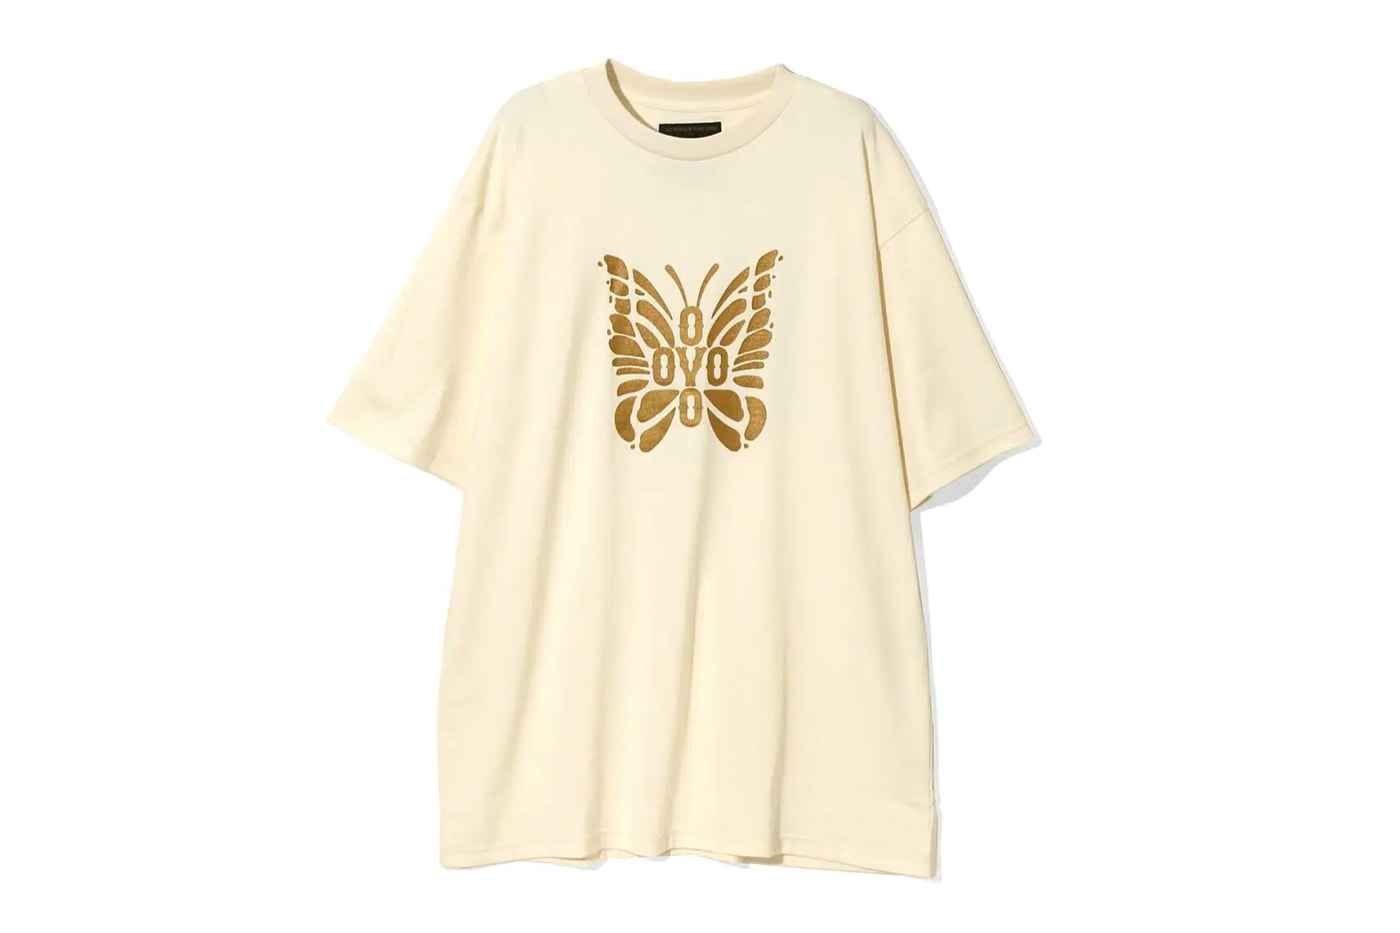 ニードルズとドレイク手掛けるOVOのコラボコレクションが発売 NEEDLES and OVO Drop First Ever Collaboration drake owl butterfly tracksuits t-shirt bandana accessories